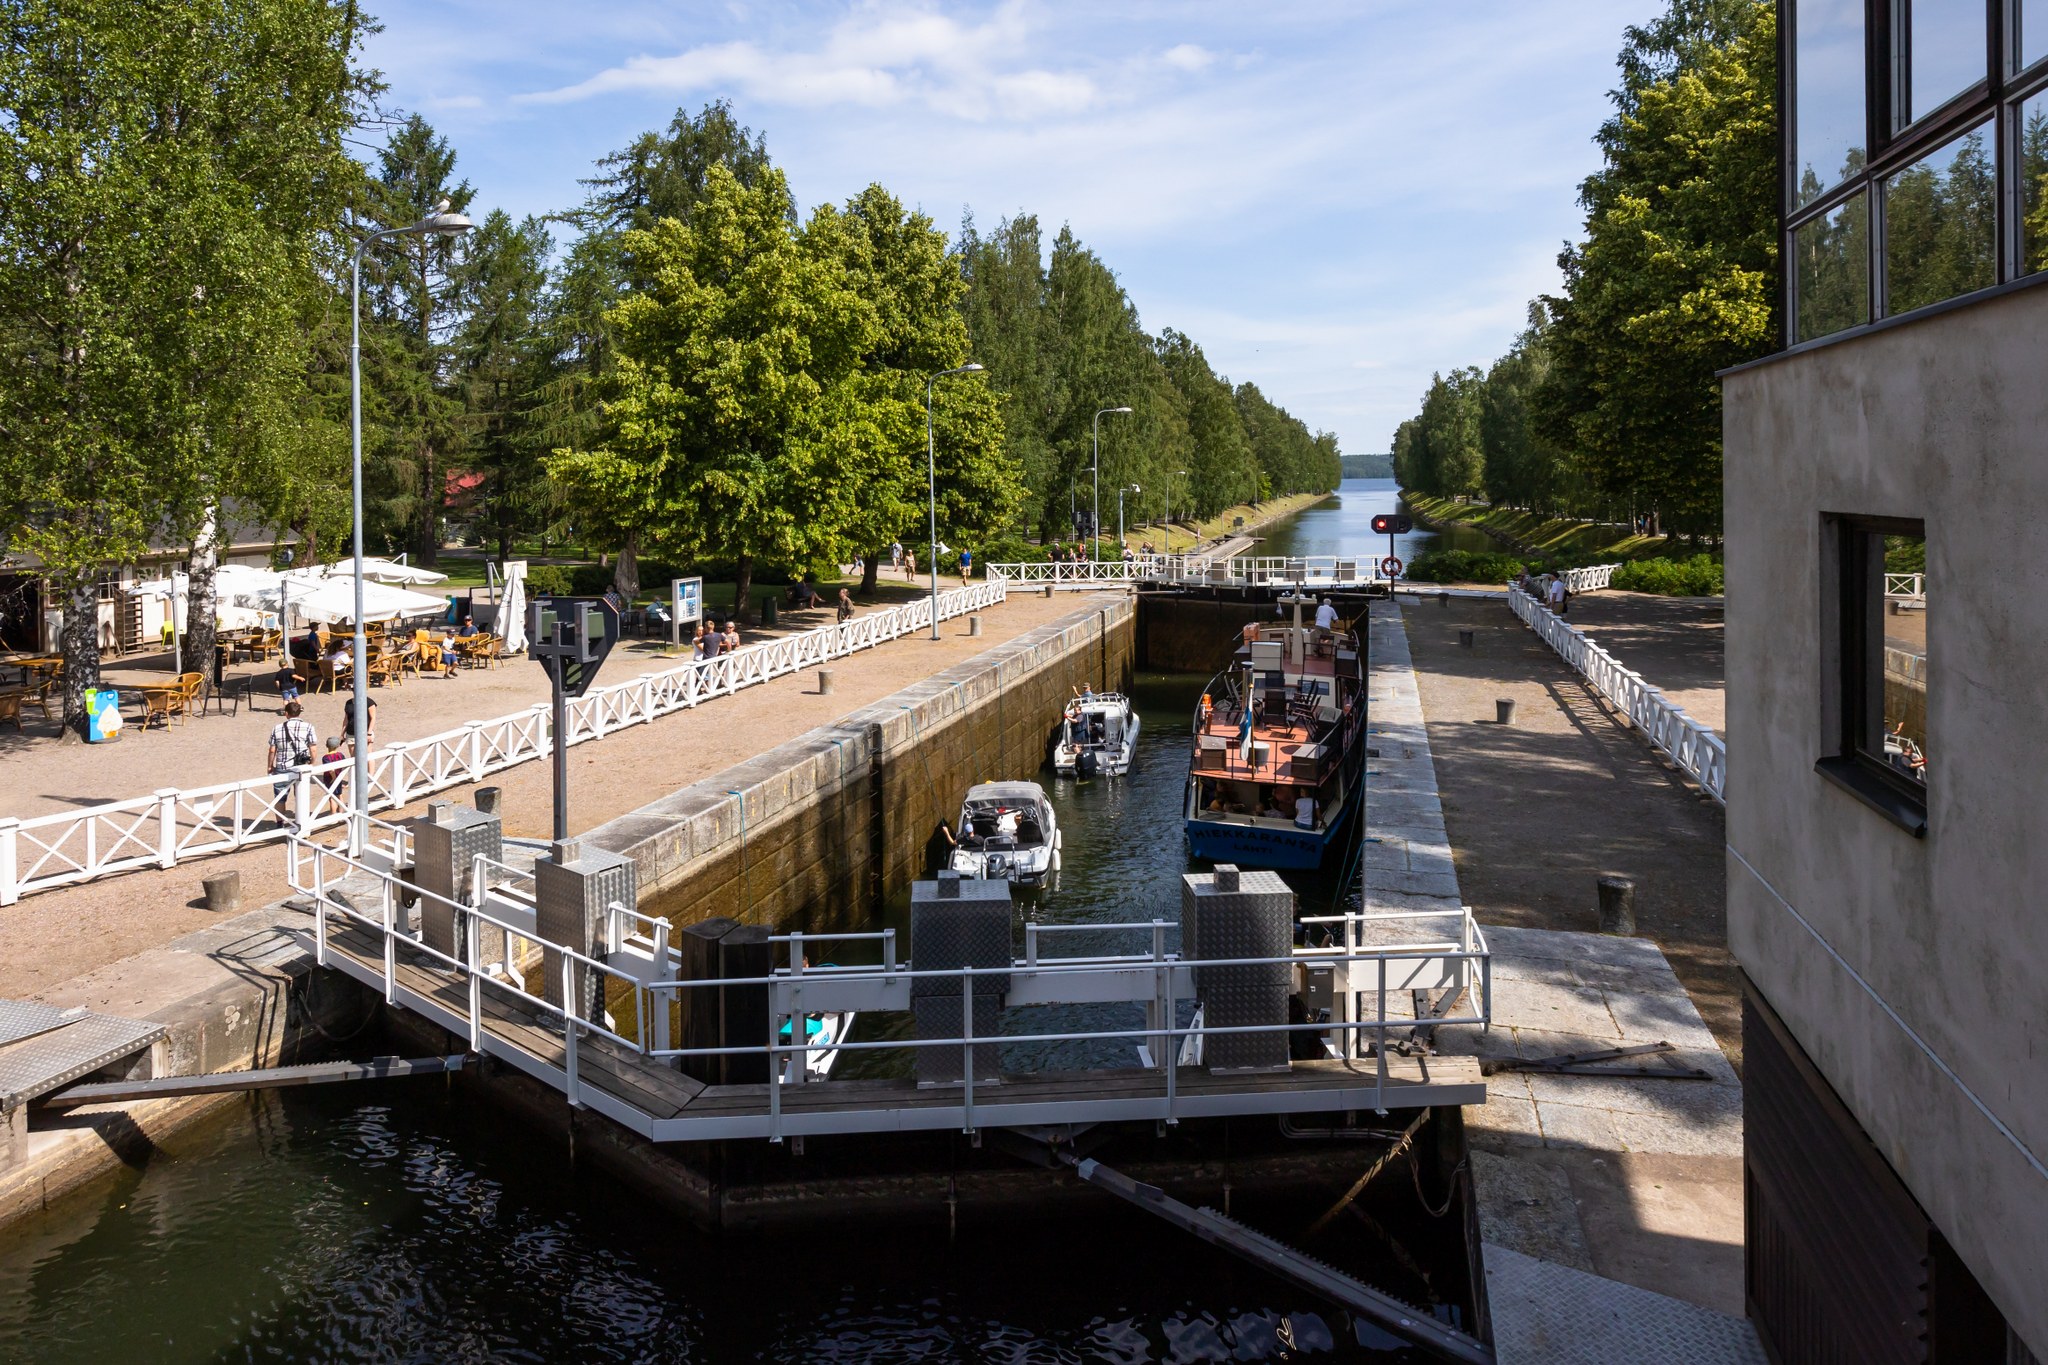 Vääksy canal in the summer.